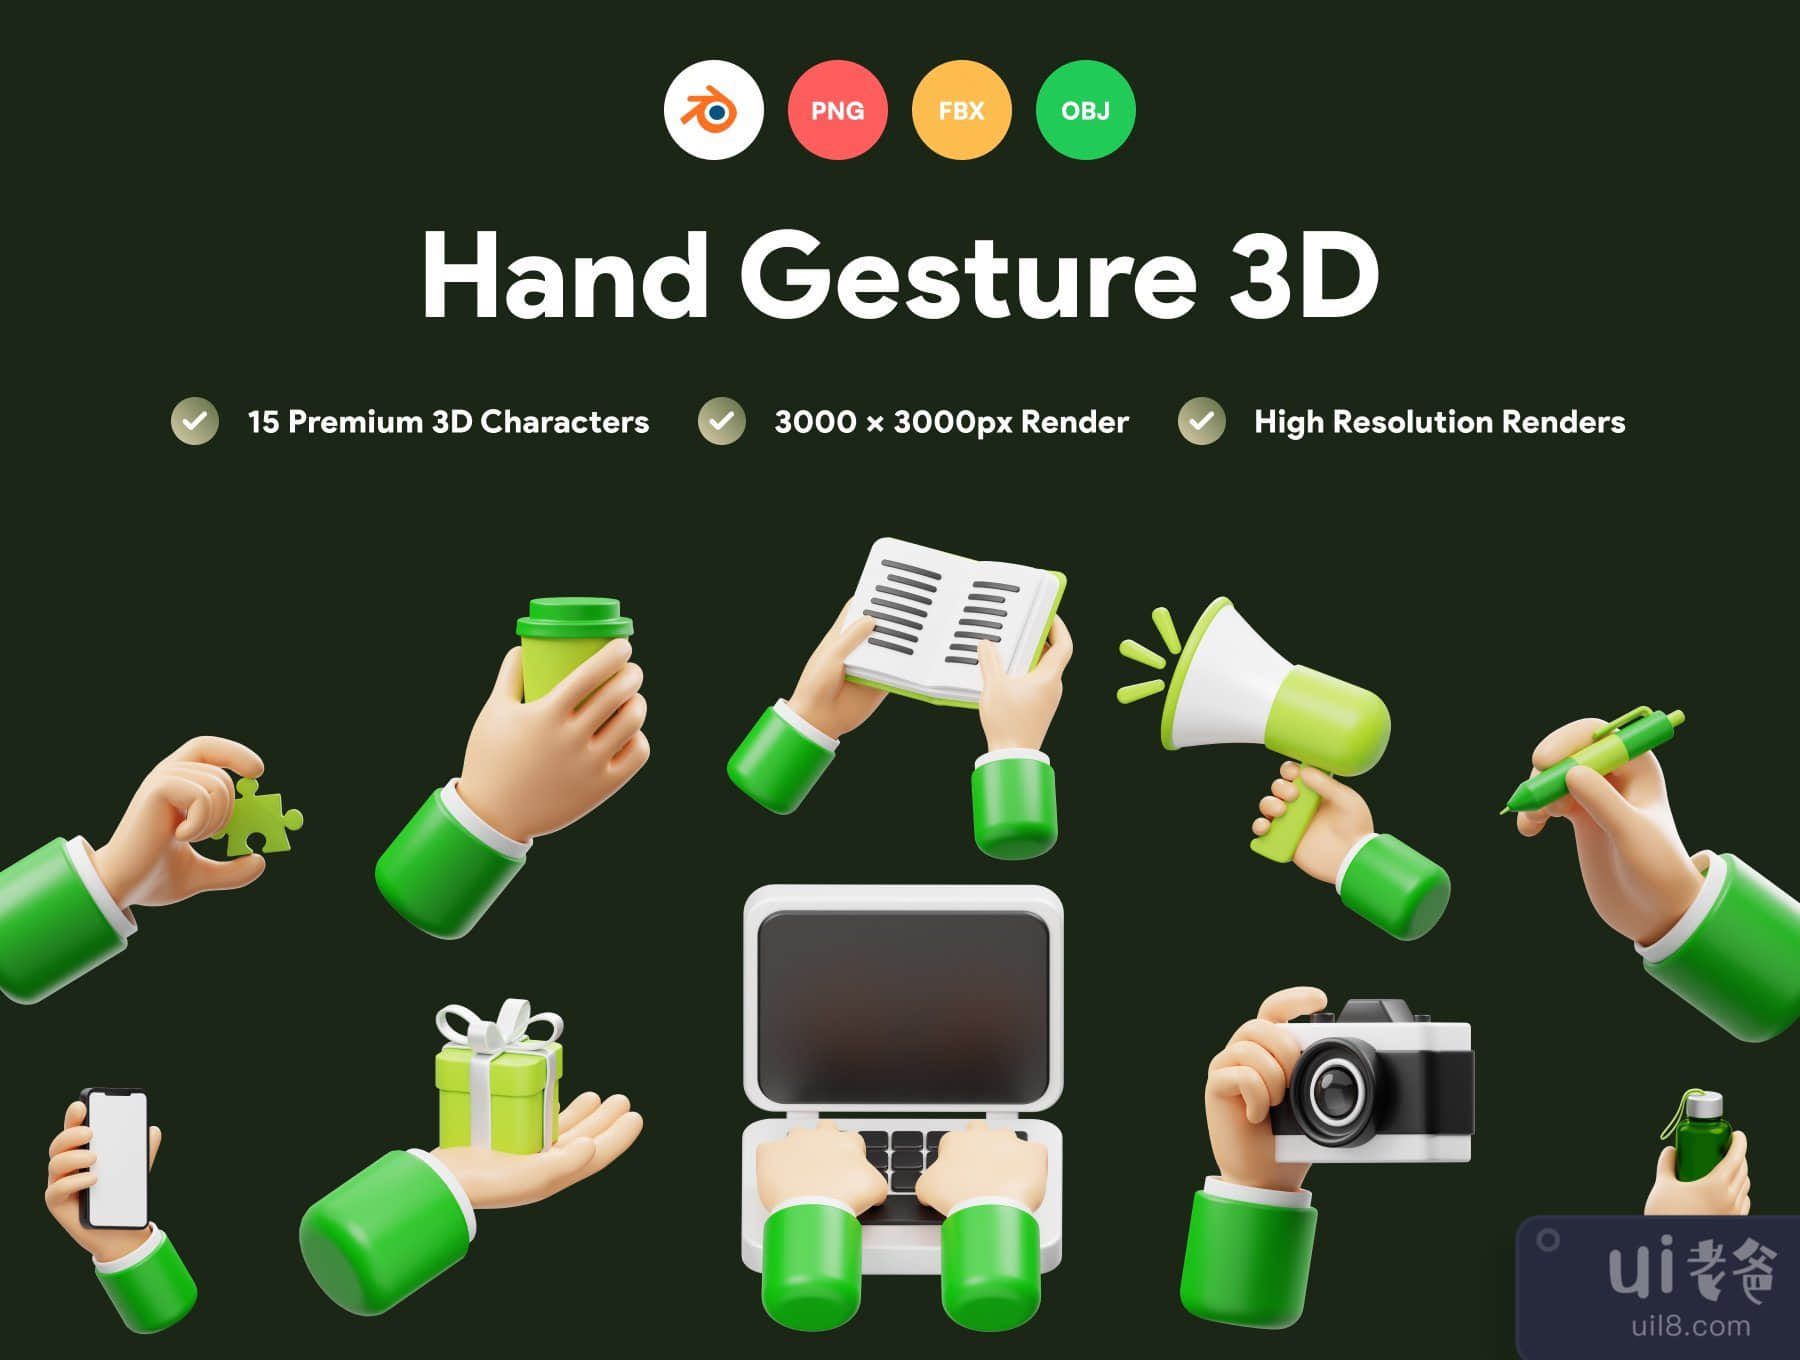 手势 3D 图标 (Hand Gesture 3D Icon)插图